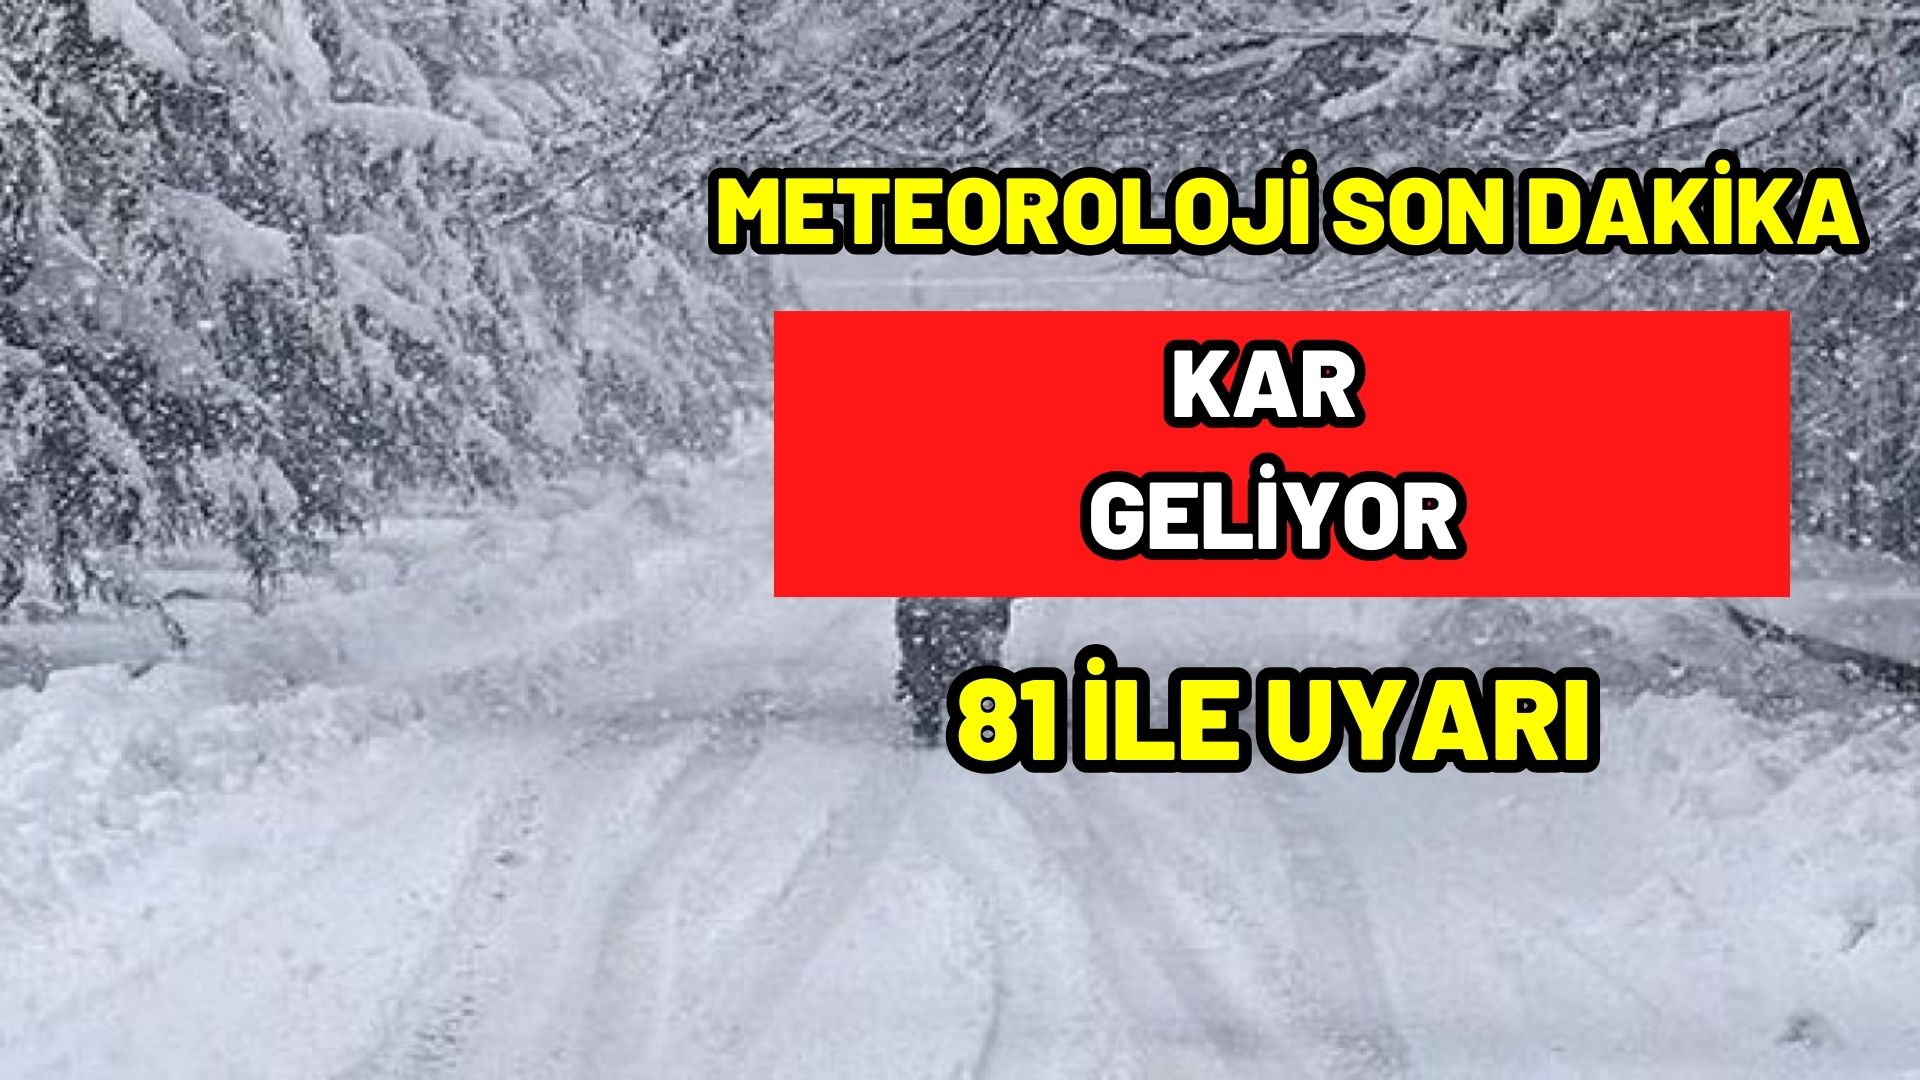 81 ile uyarı kar geliyor! Türkiye bu akşam yeni yağışlı havanın etkisine girecek